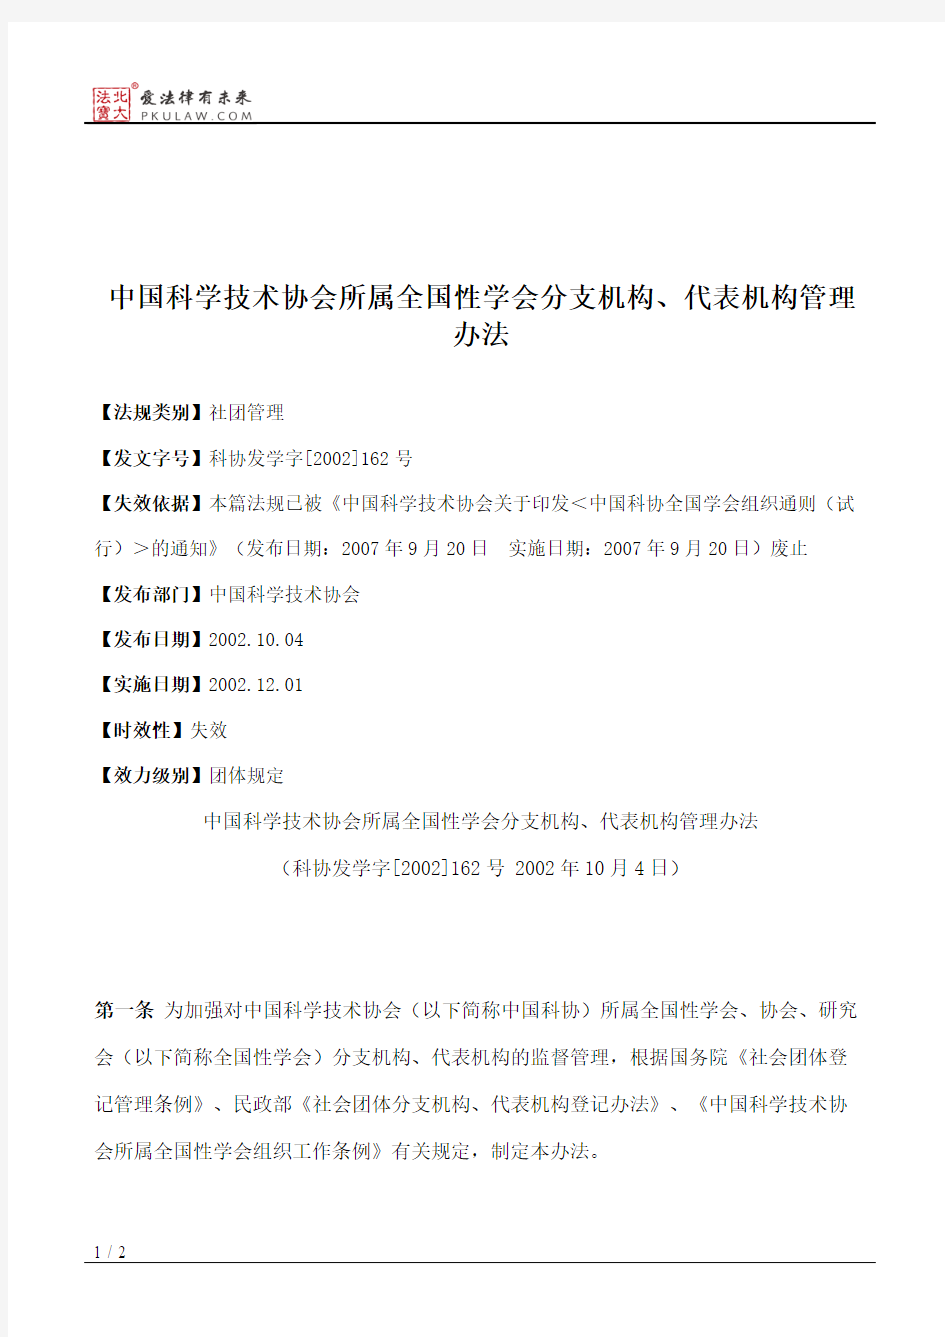 中国科学技术协会所属全国性学会分支机构、代表机构管理办法